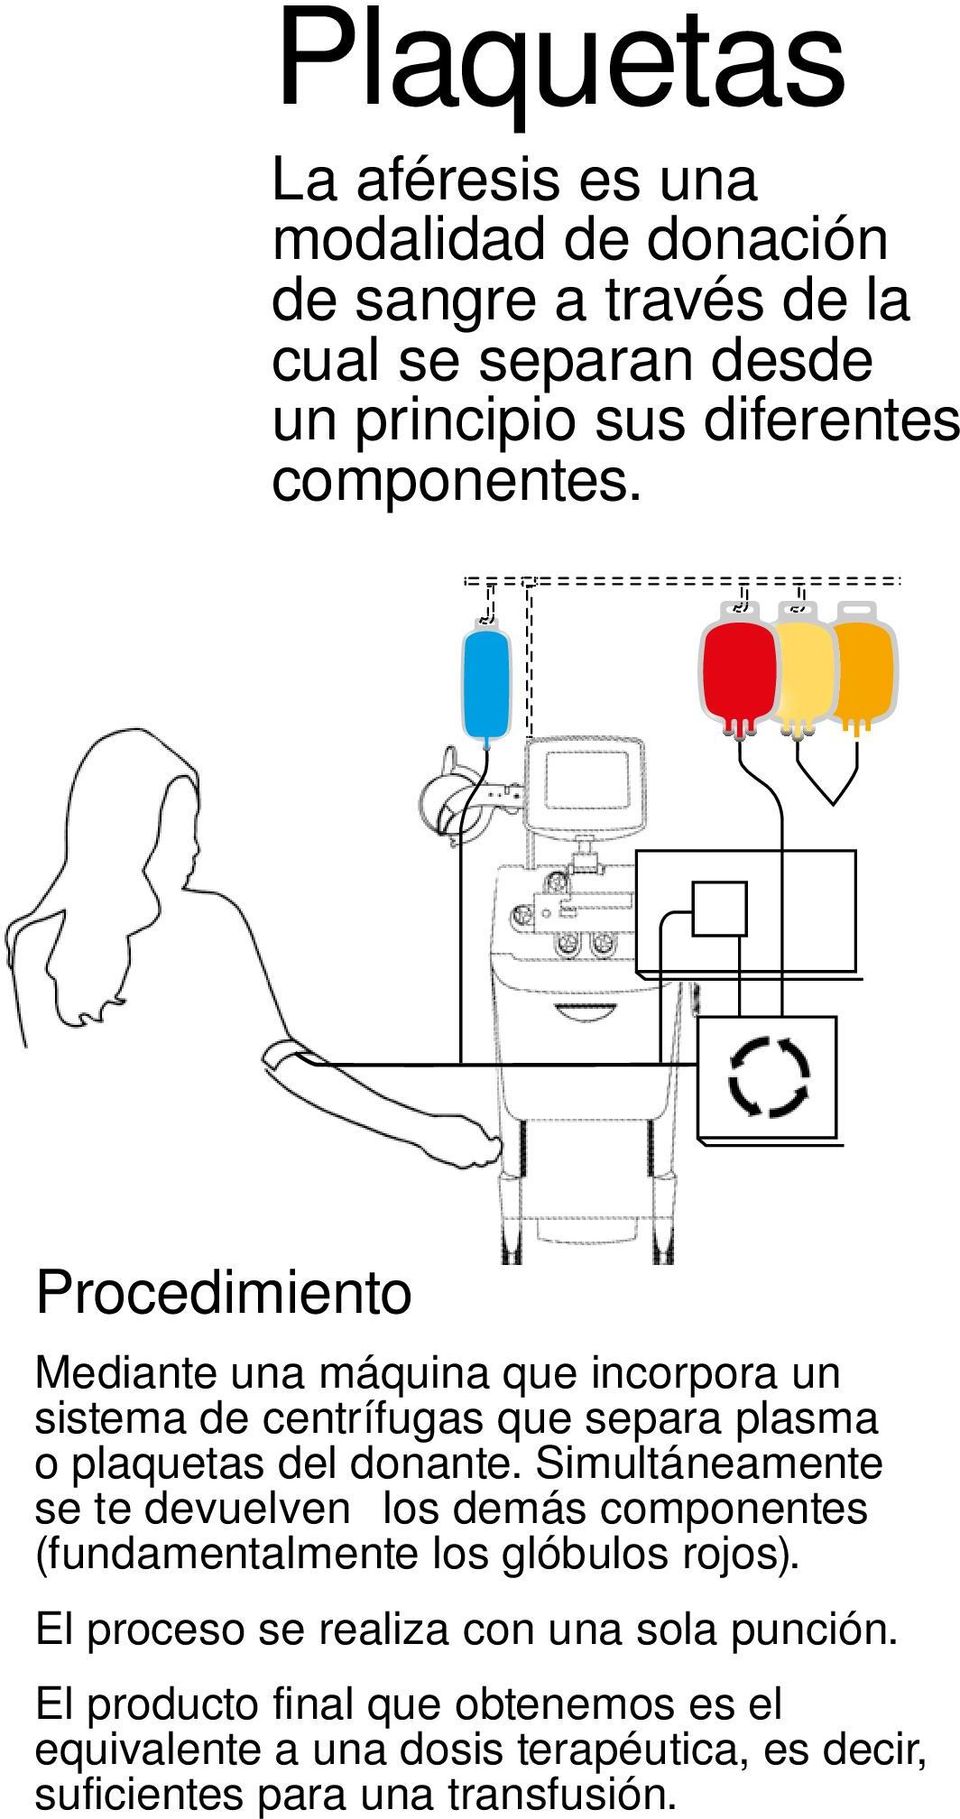 Procedimiento Mediante una máquina que incorpora un sistema de centrífugas que separa plasma o plaquetas del donante.